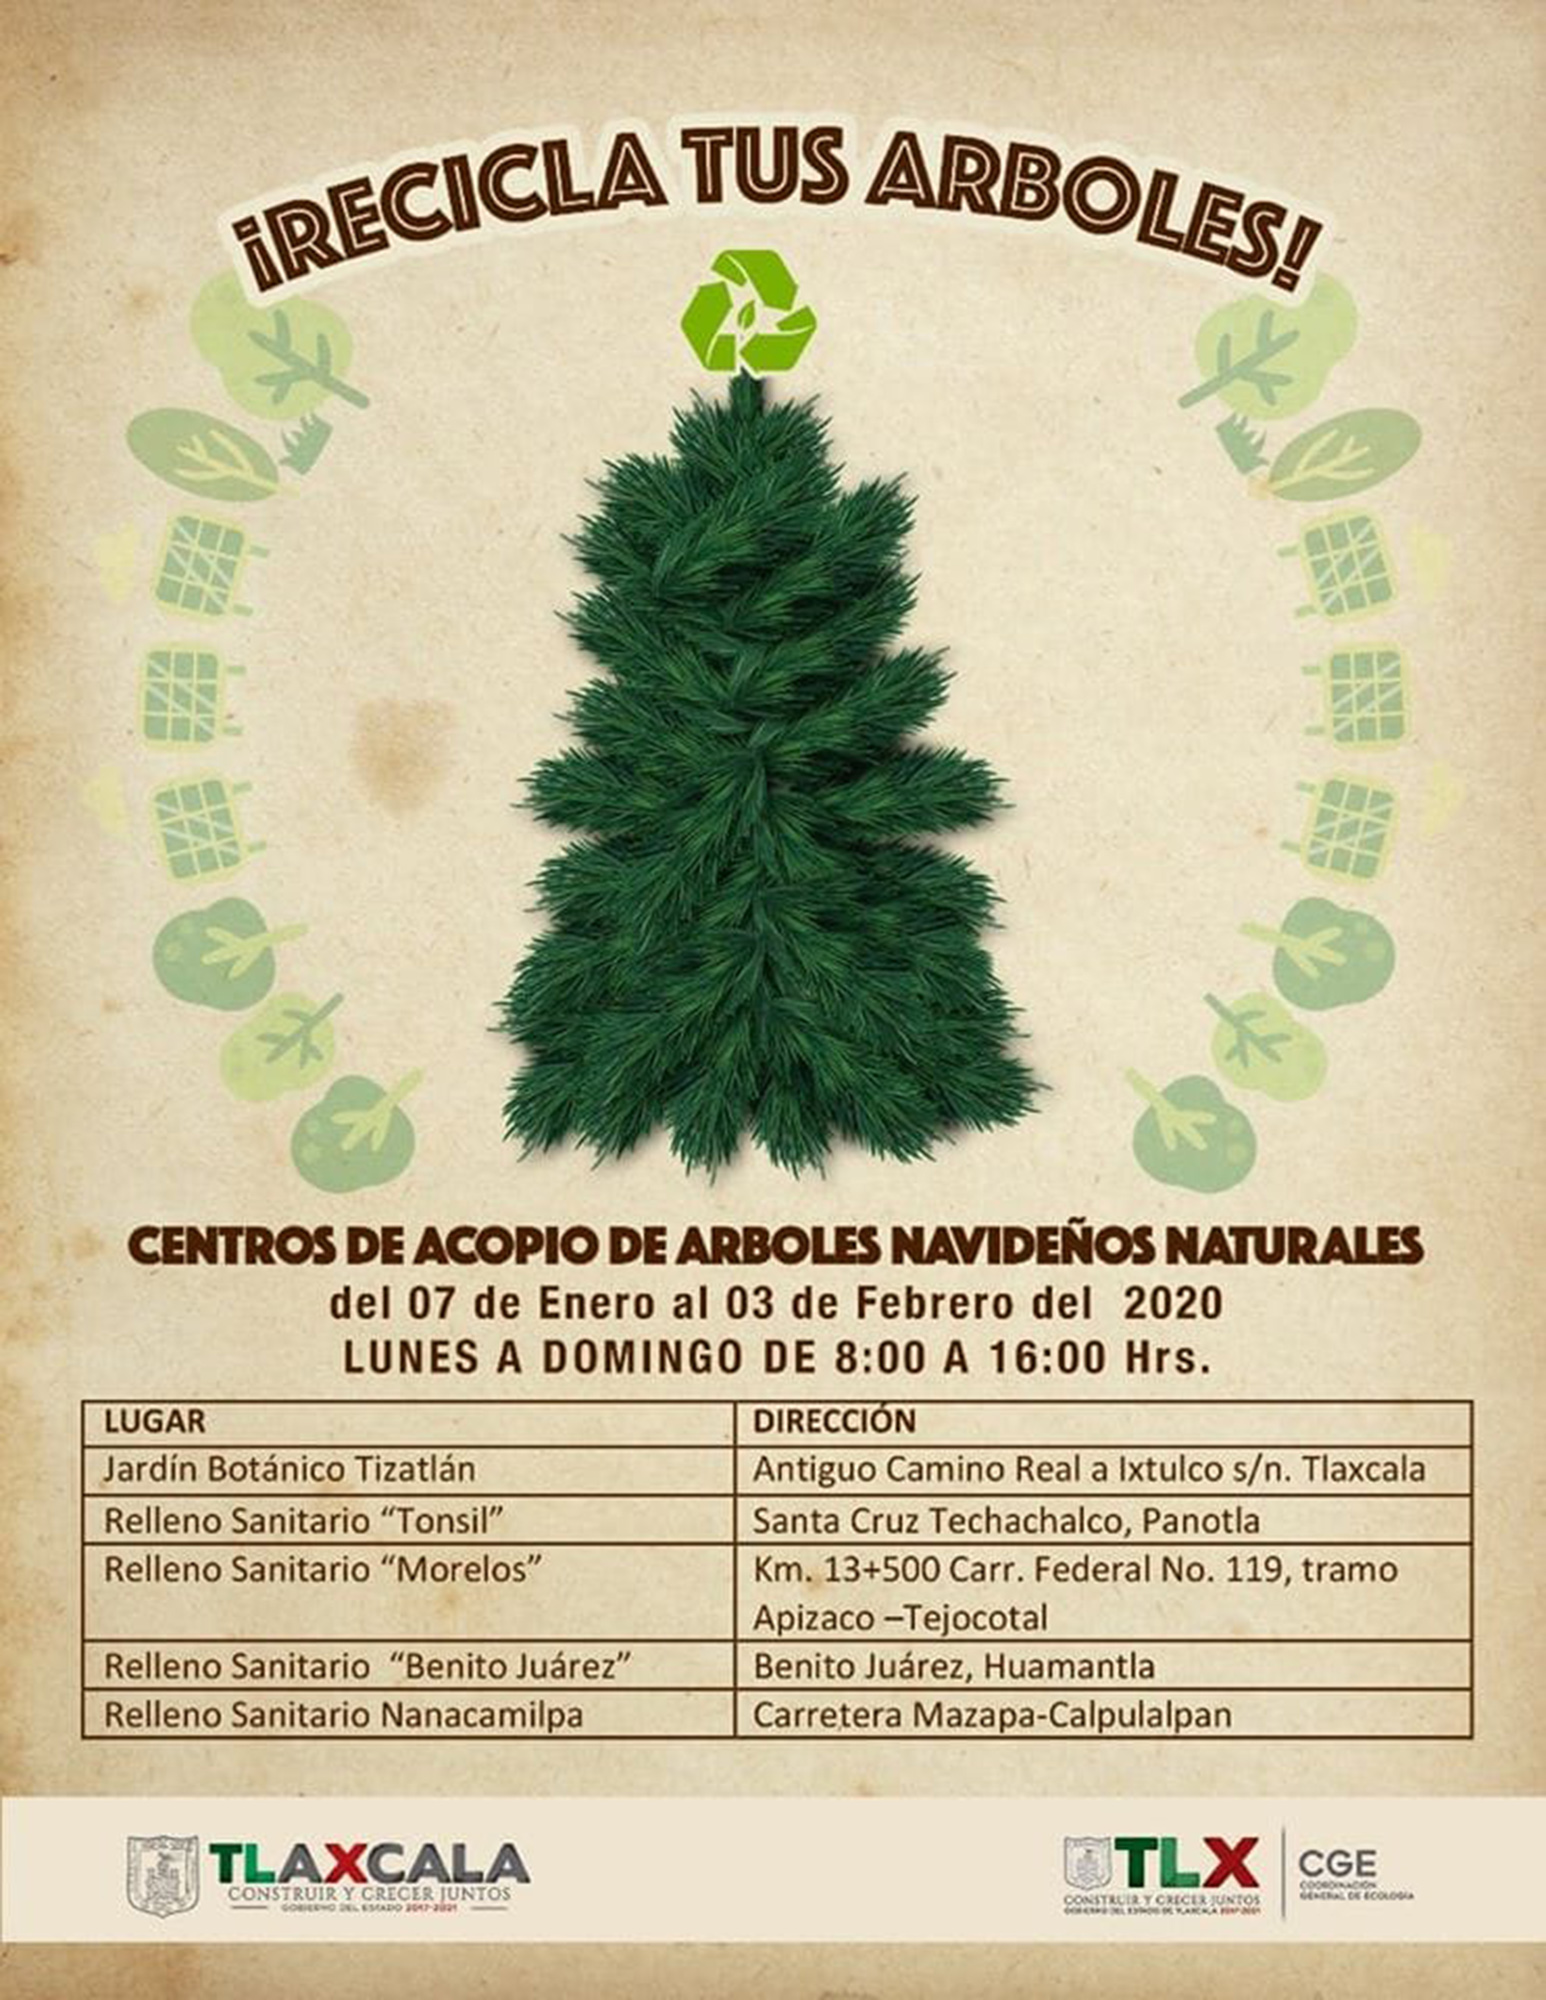 Invita CGE a la población a reciclar sus árboles navideños.